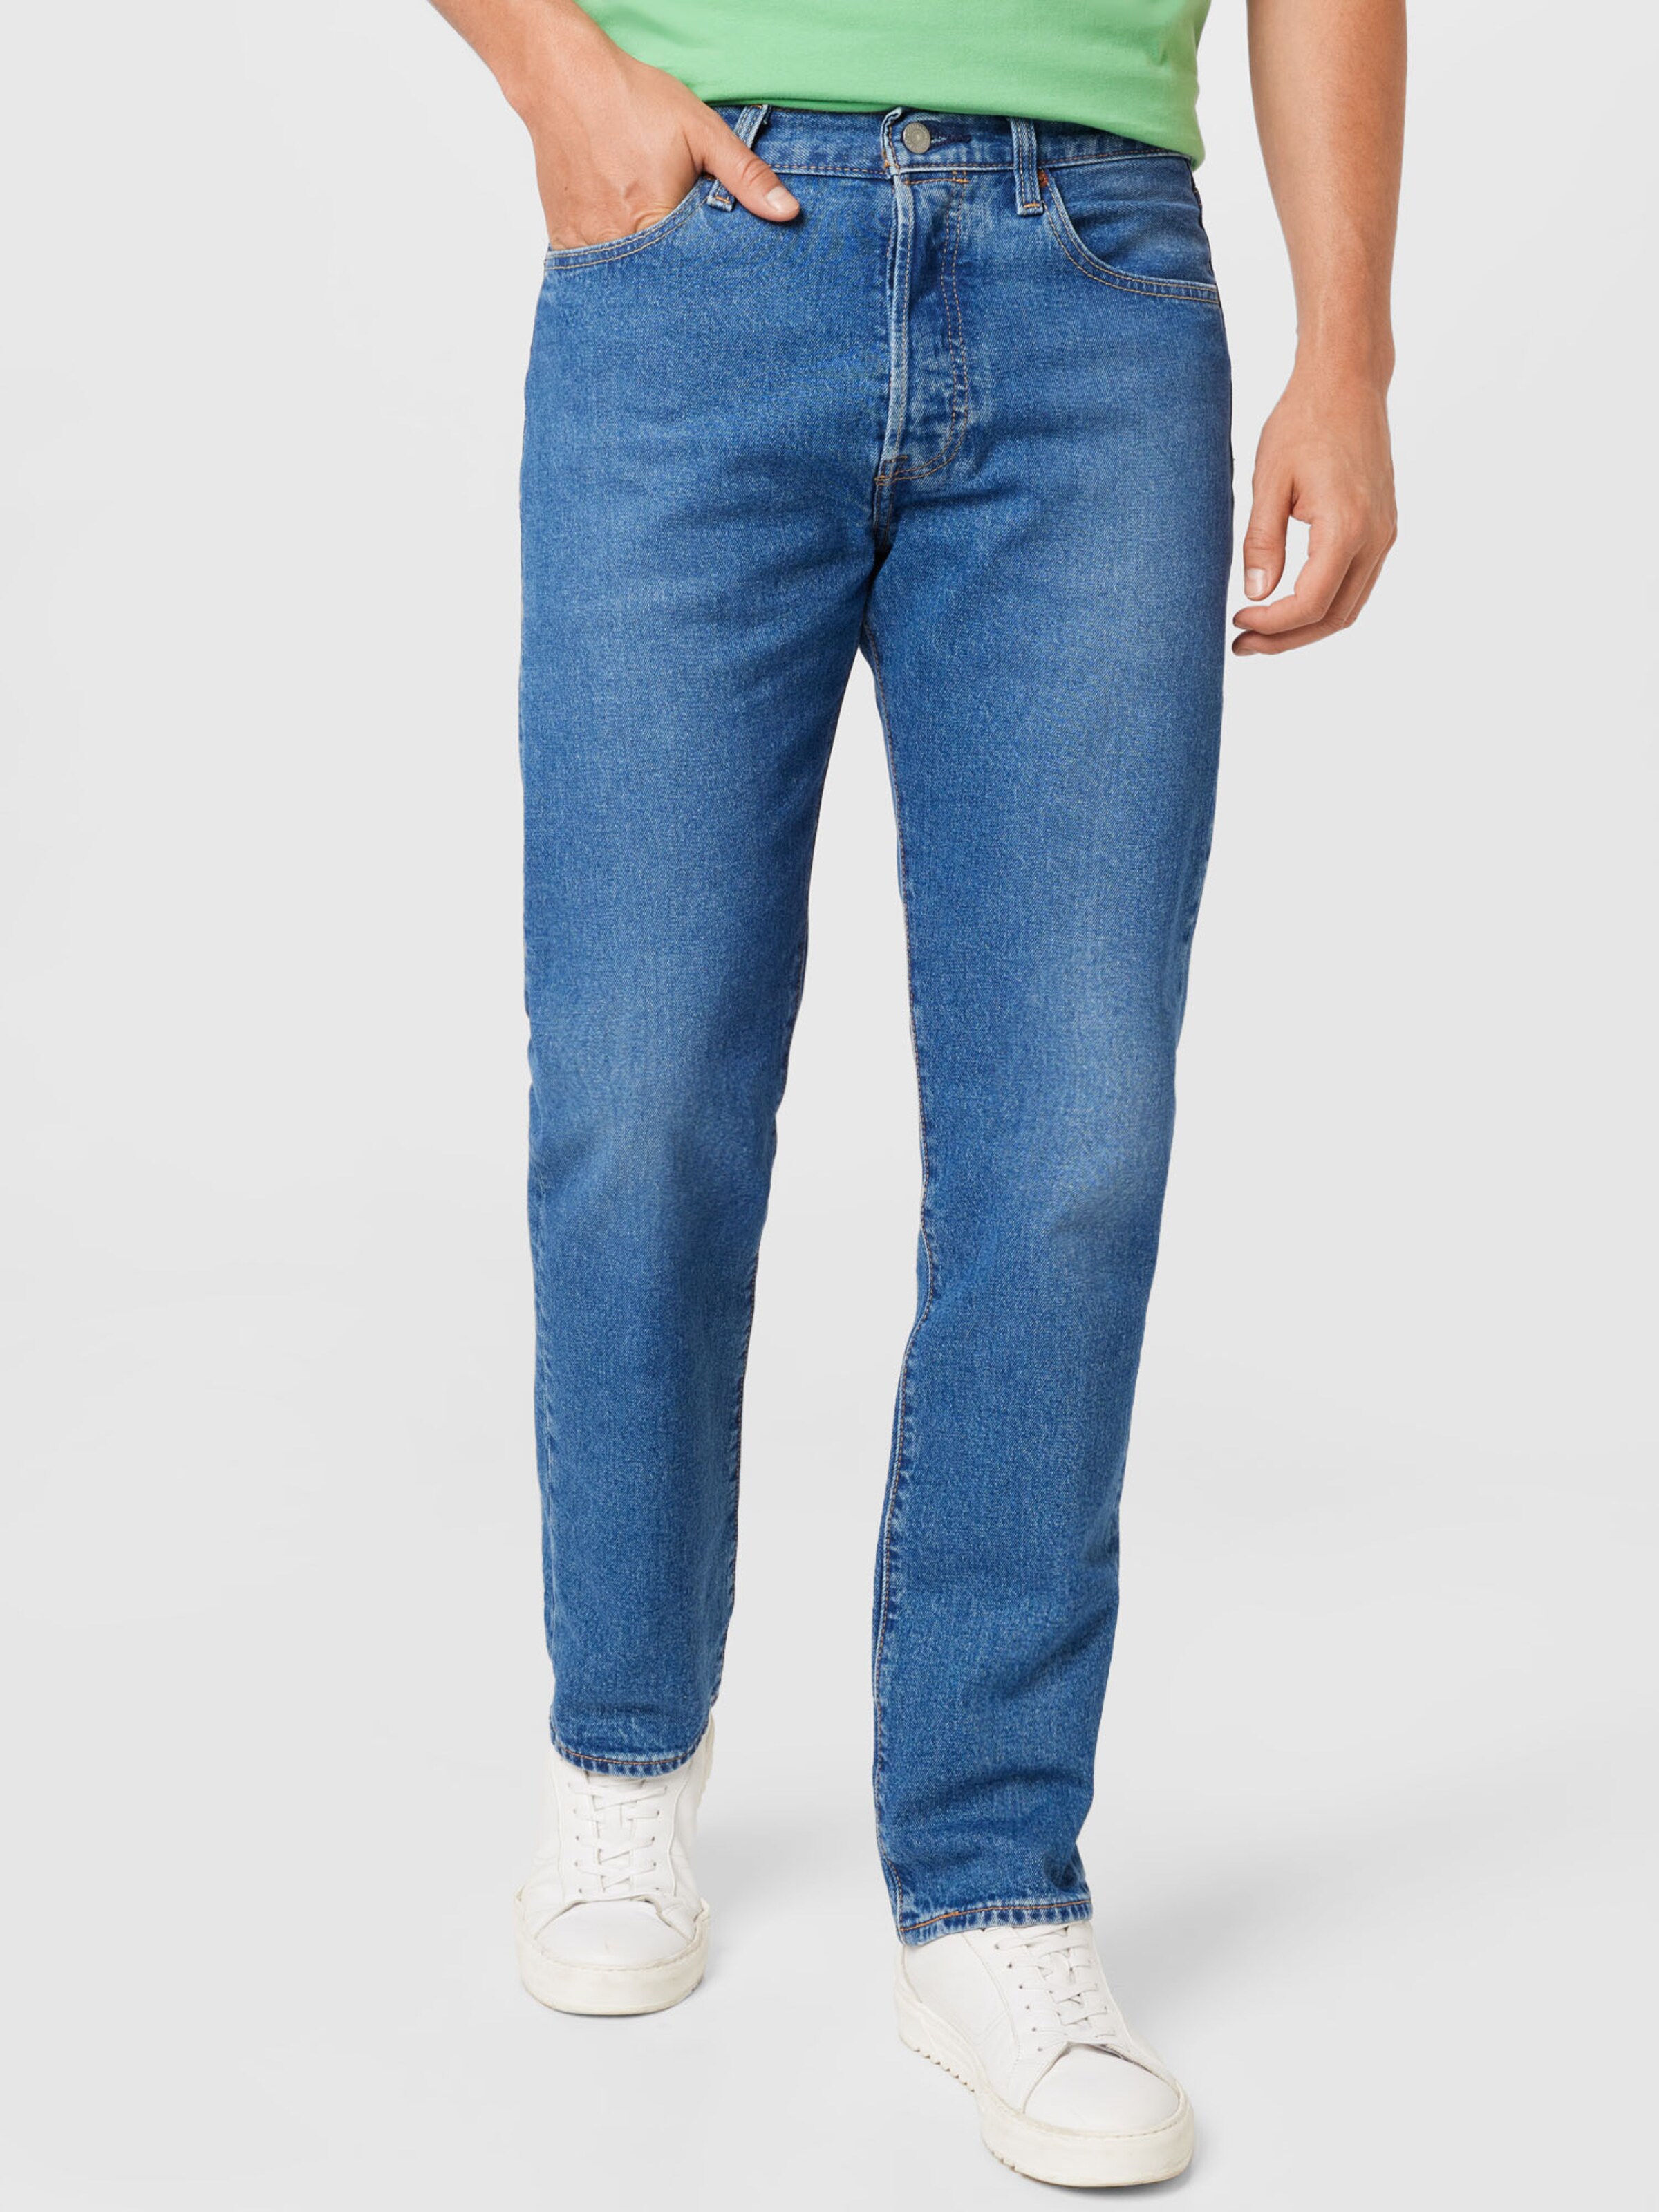 Jeans Tramper ABOUT YOU Uomo Abbigliamento Pantaloni e jeans Jeans Jeans slim & sigaretta 